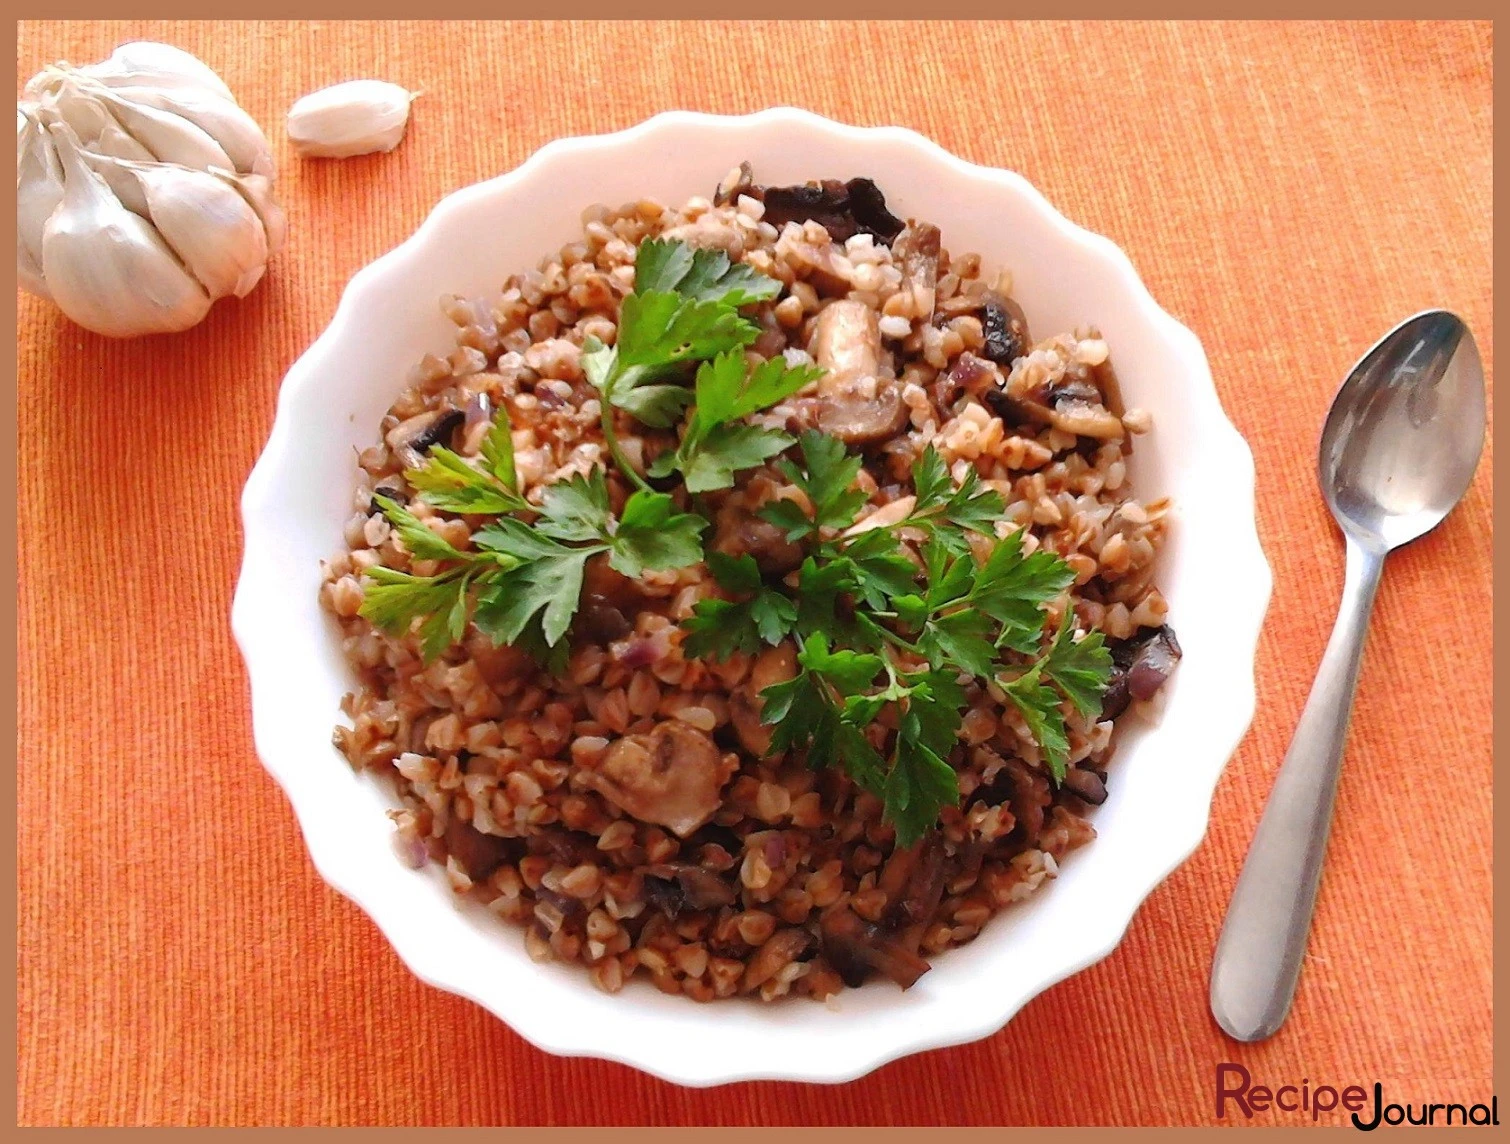 Гречневая каша с луком и грибами - рецепт русской кухни, постная еда